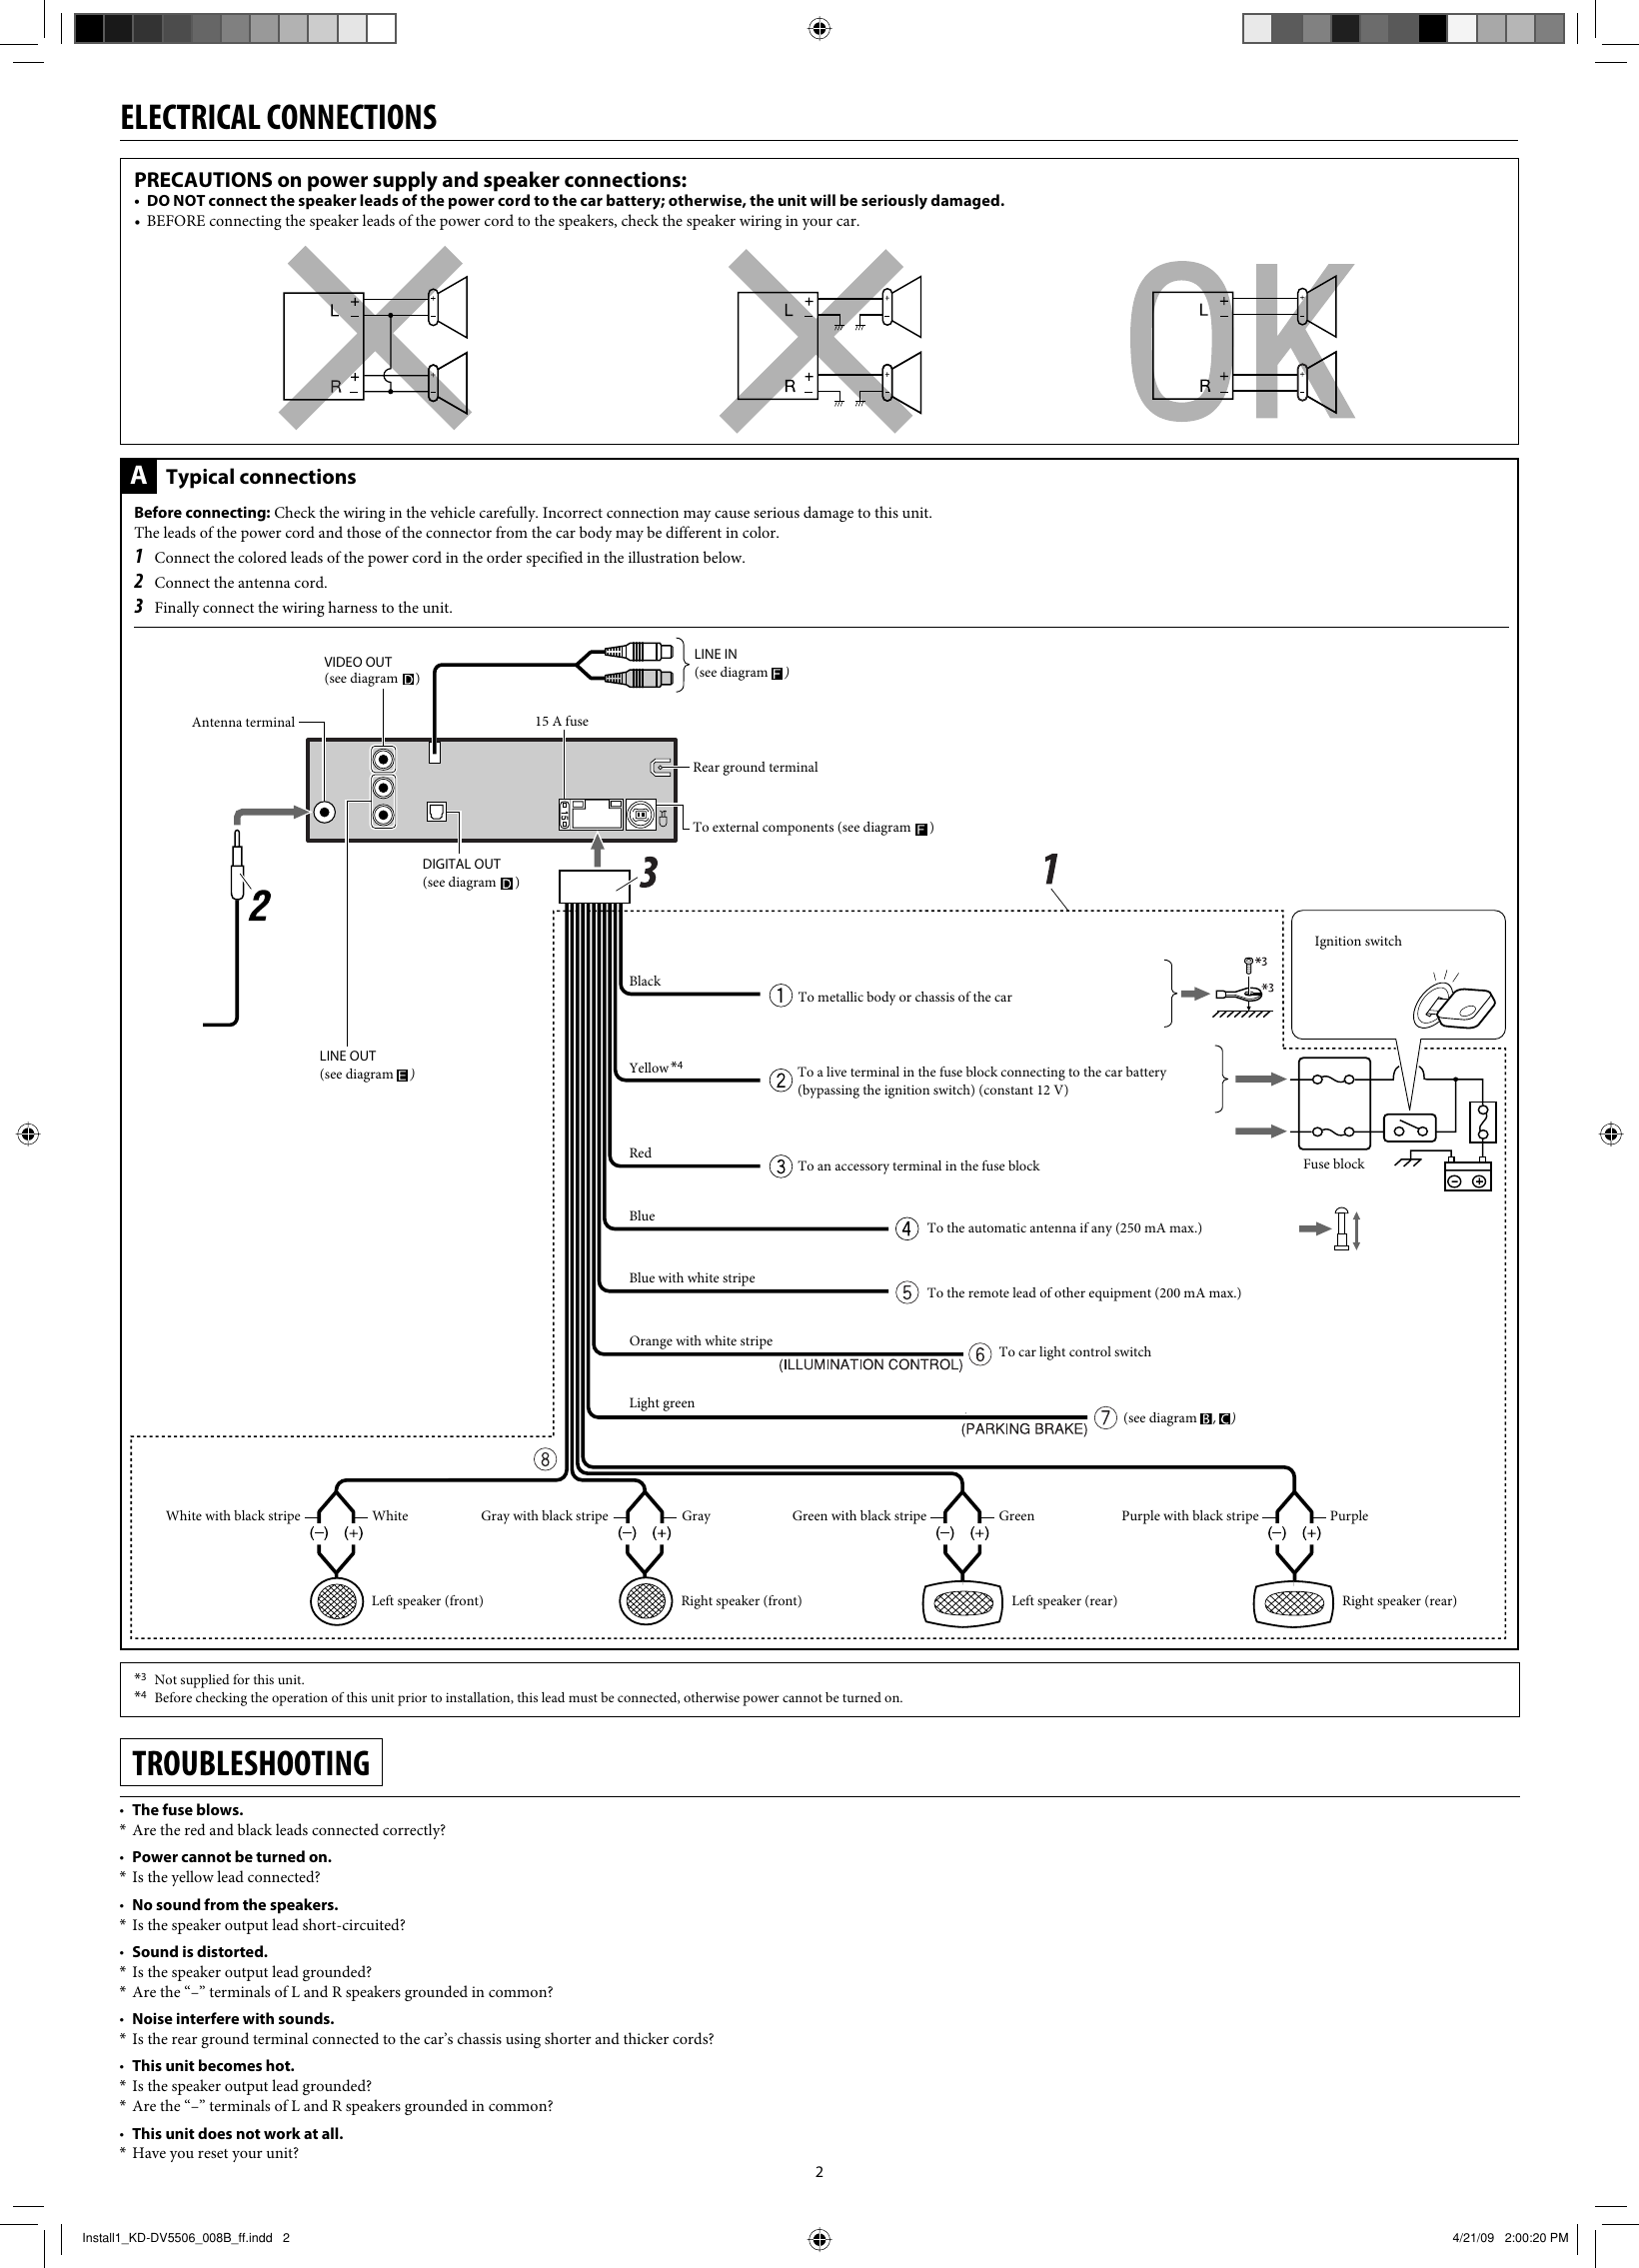 Page 2 of 4 - JVC KD-DV5504UI Install1_KD-DV5506_008A_f User Manual GET0606-008B